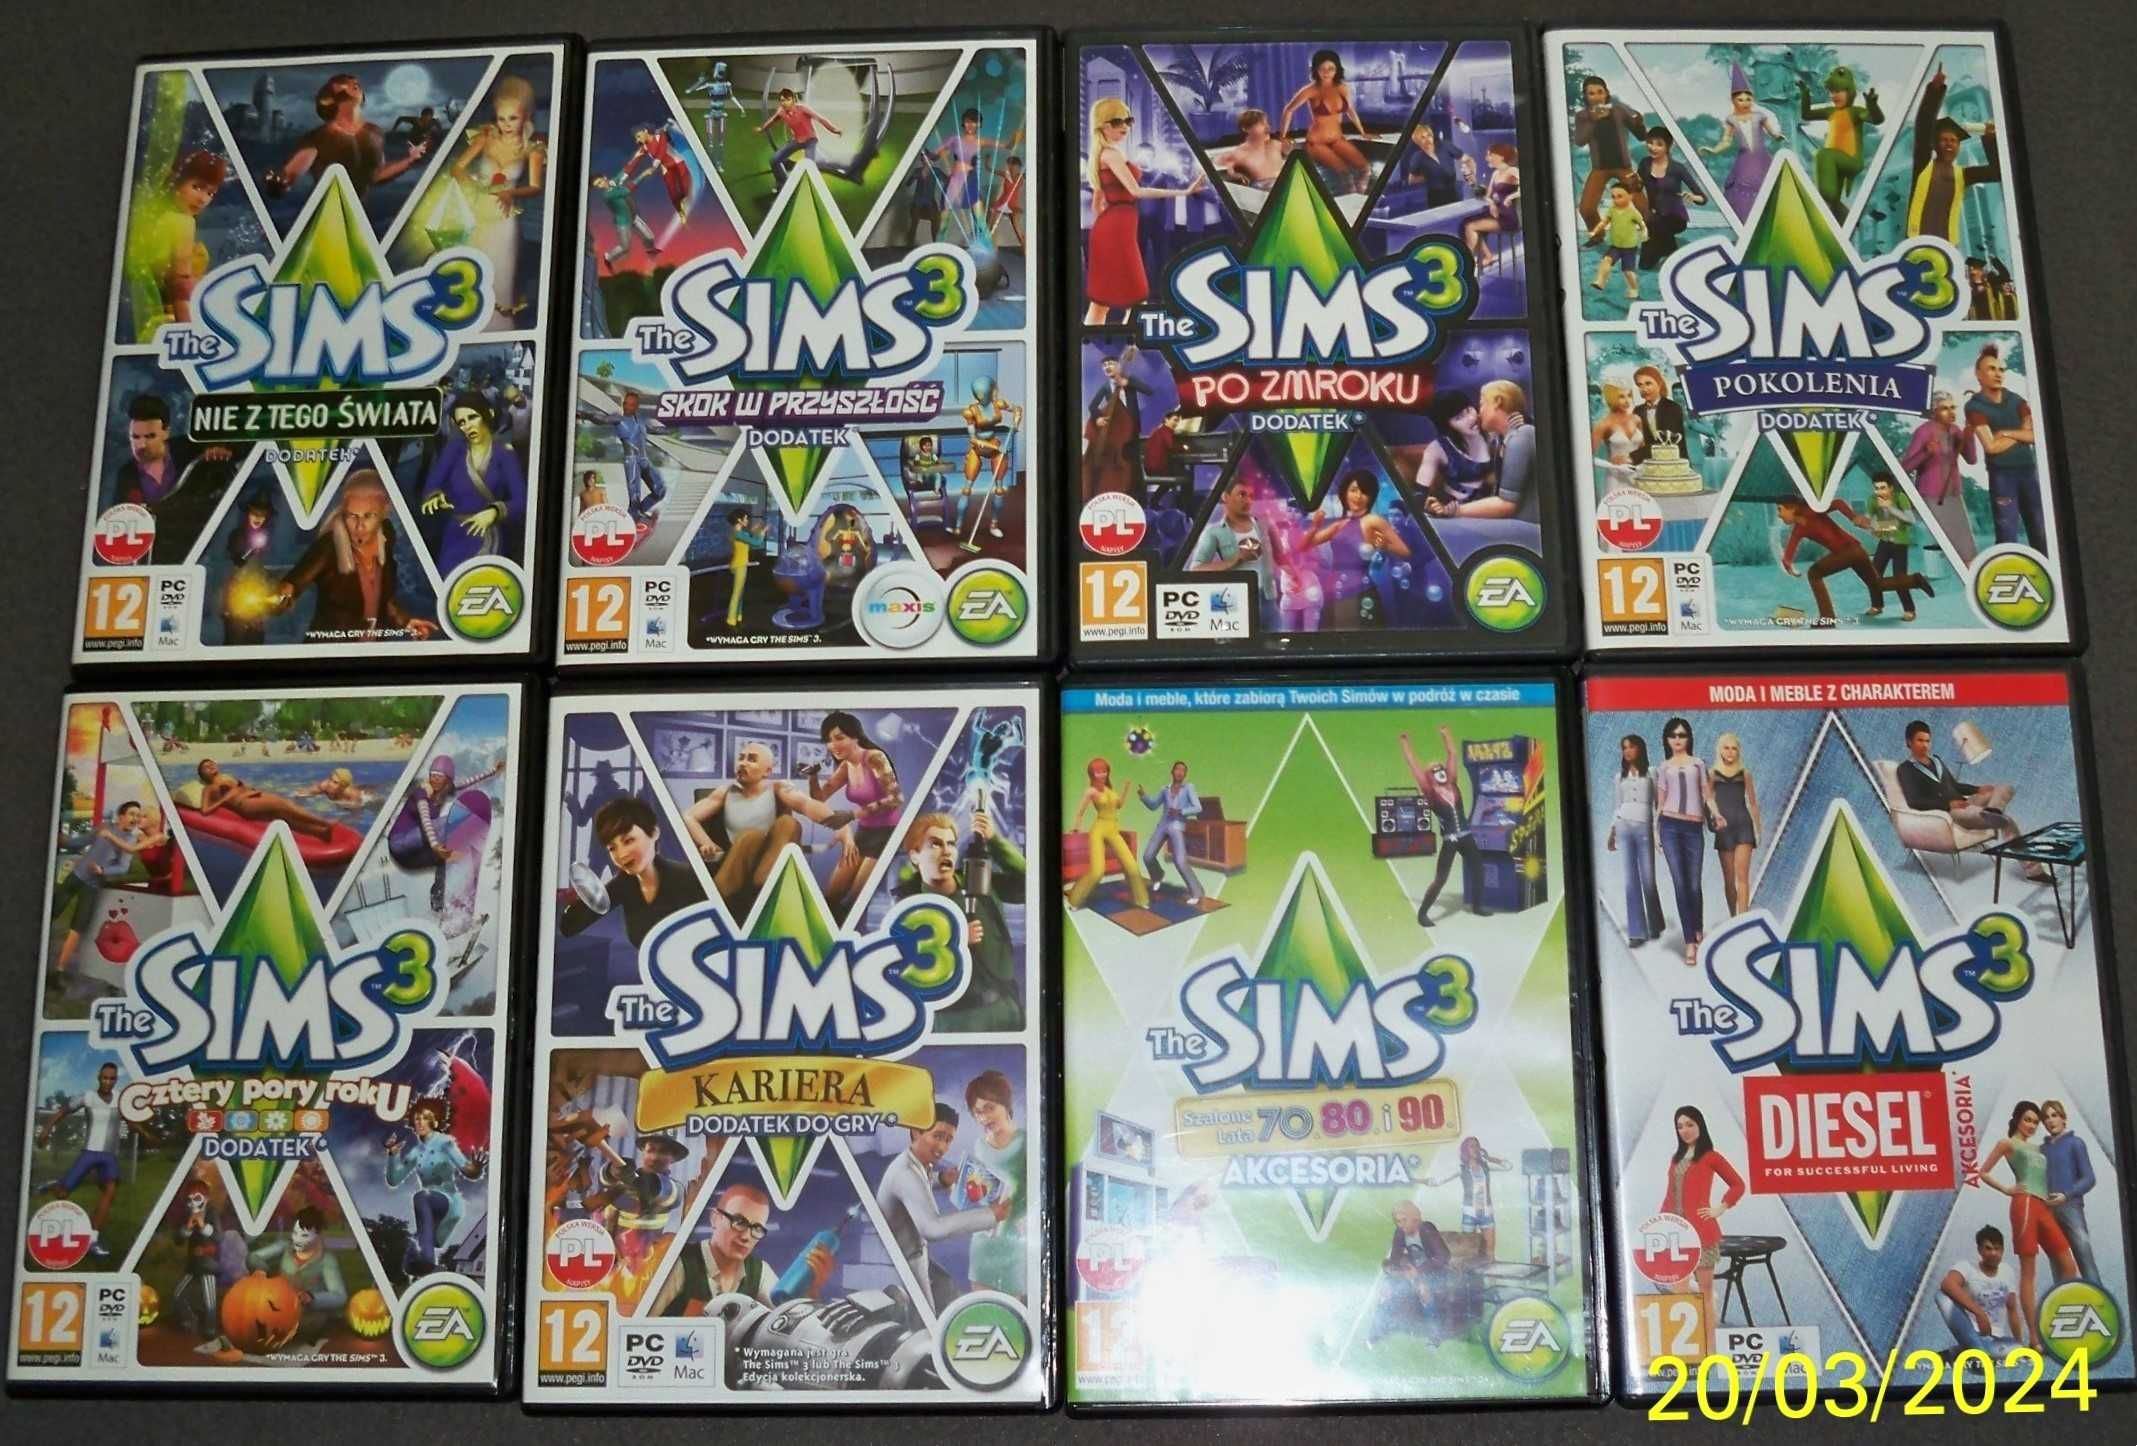 Sims 3 + 6 dodatków + 2 akcesoria + dodatkowe 5 gier